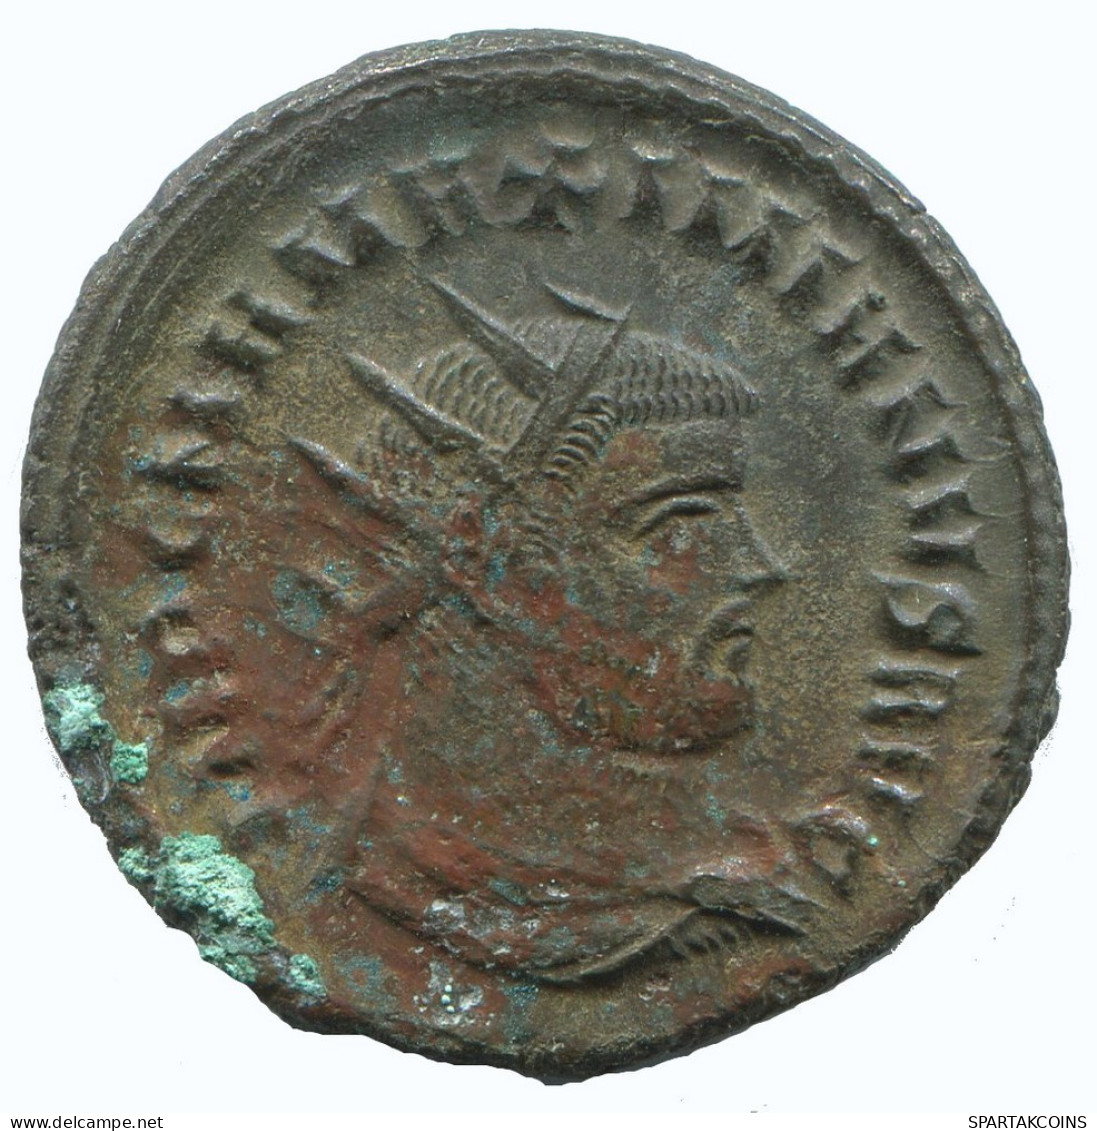 MAXIMIANUS ANTONINIANUS Antiochia B/xxi 4.5g/22mm #NNN1961.18.U.A - The Tetrarchy (284 AD To 307 AD)